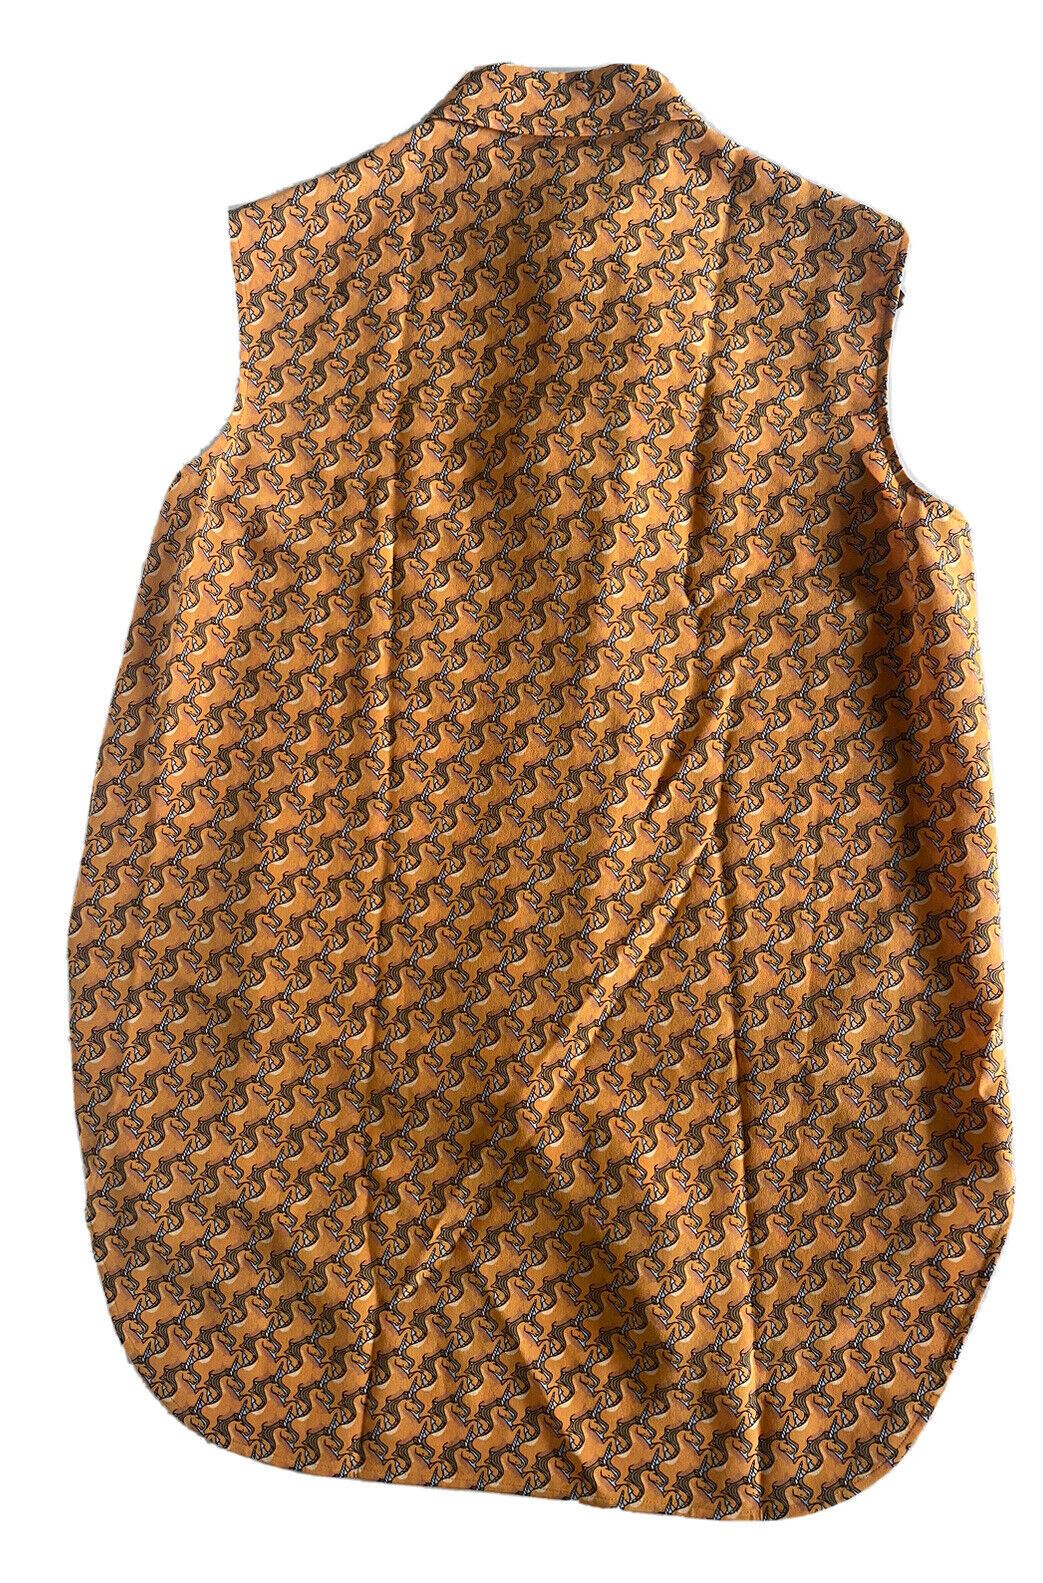 Женская рубашка на пуговицах яркого цвета дыни Burberry стоимостью 890 долларов NWT 4 США (6 Великобритания) 80324481